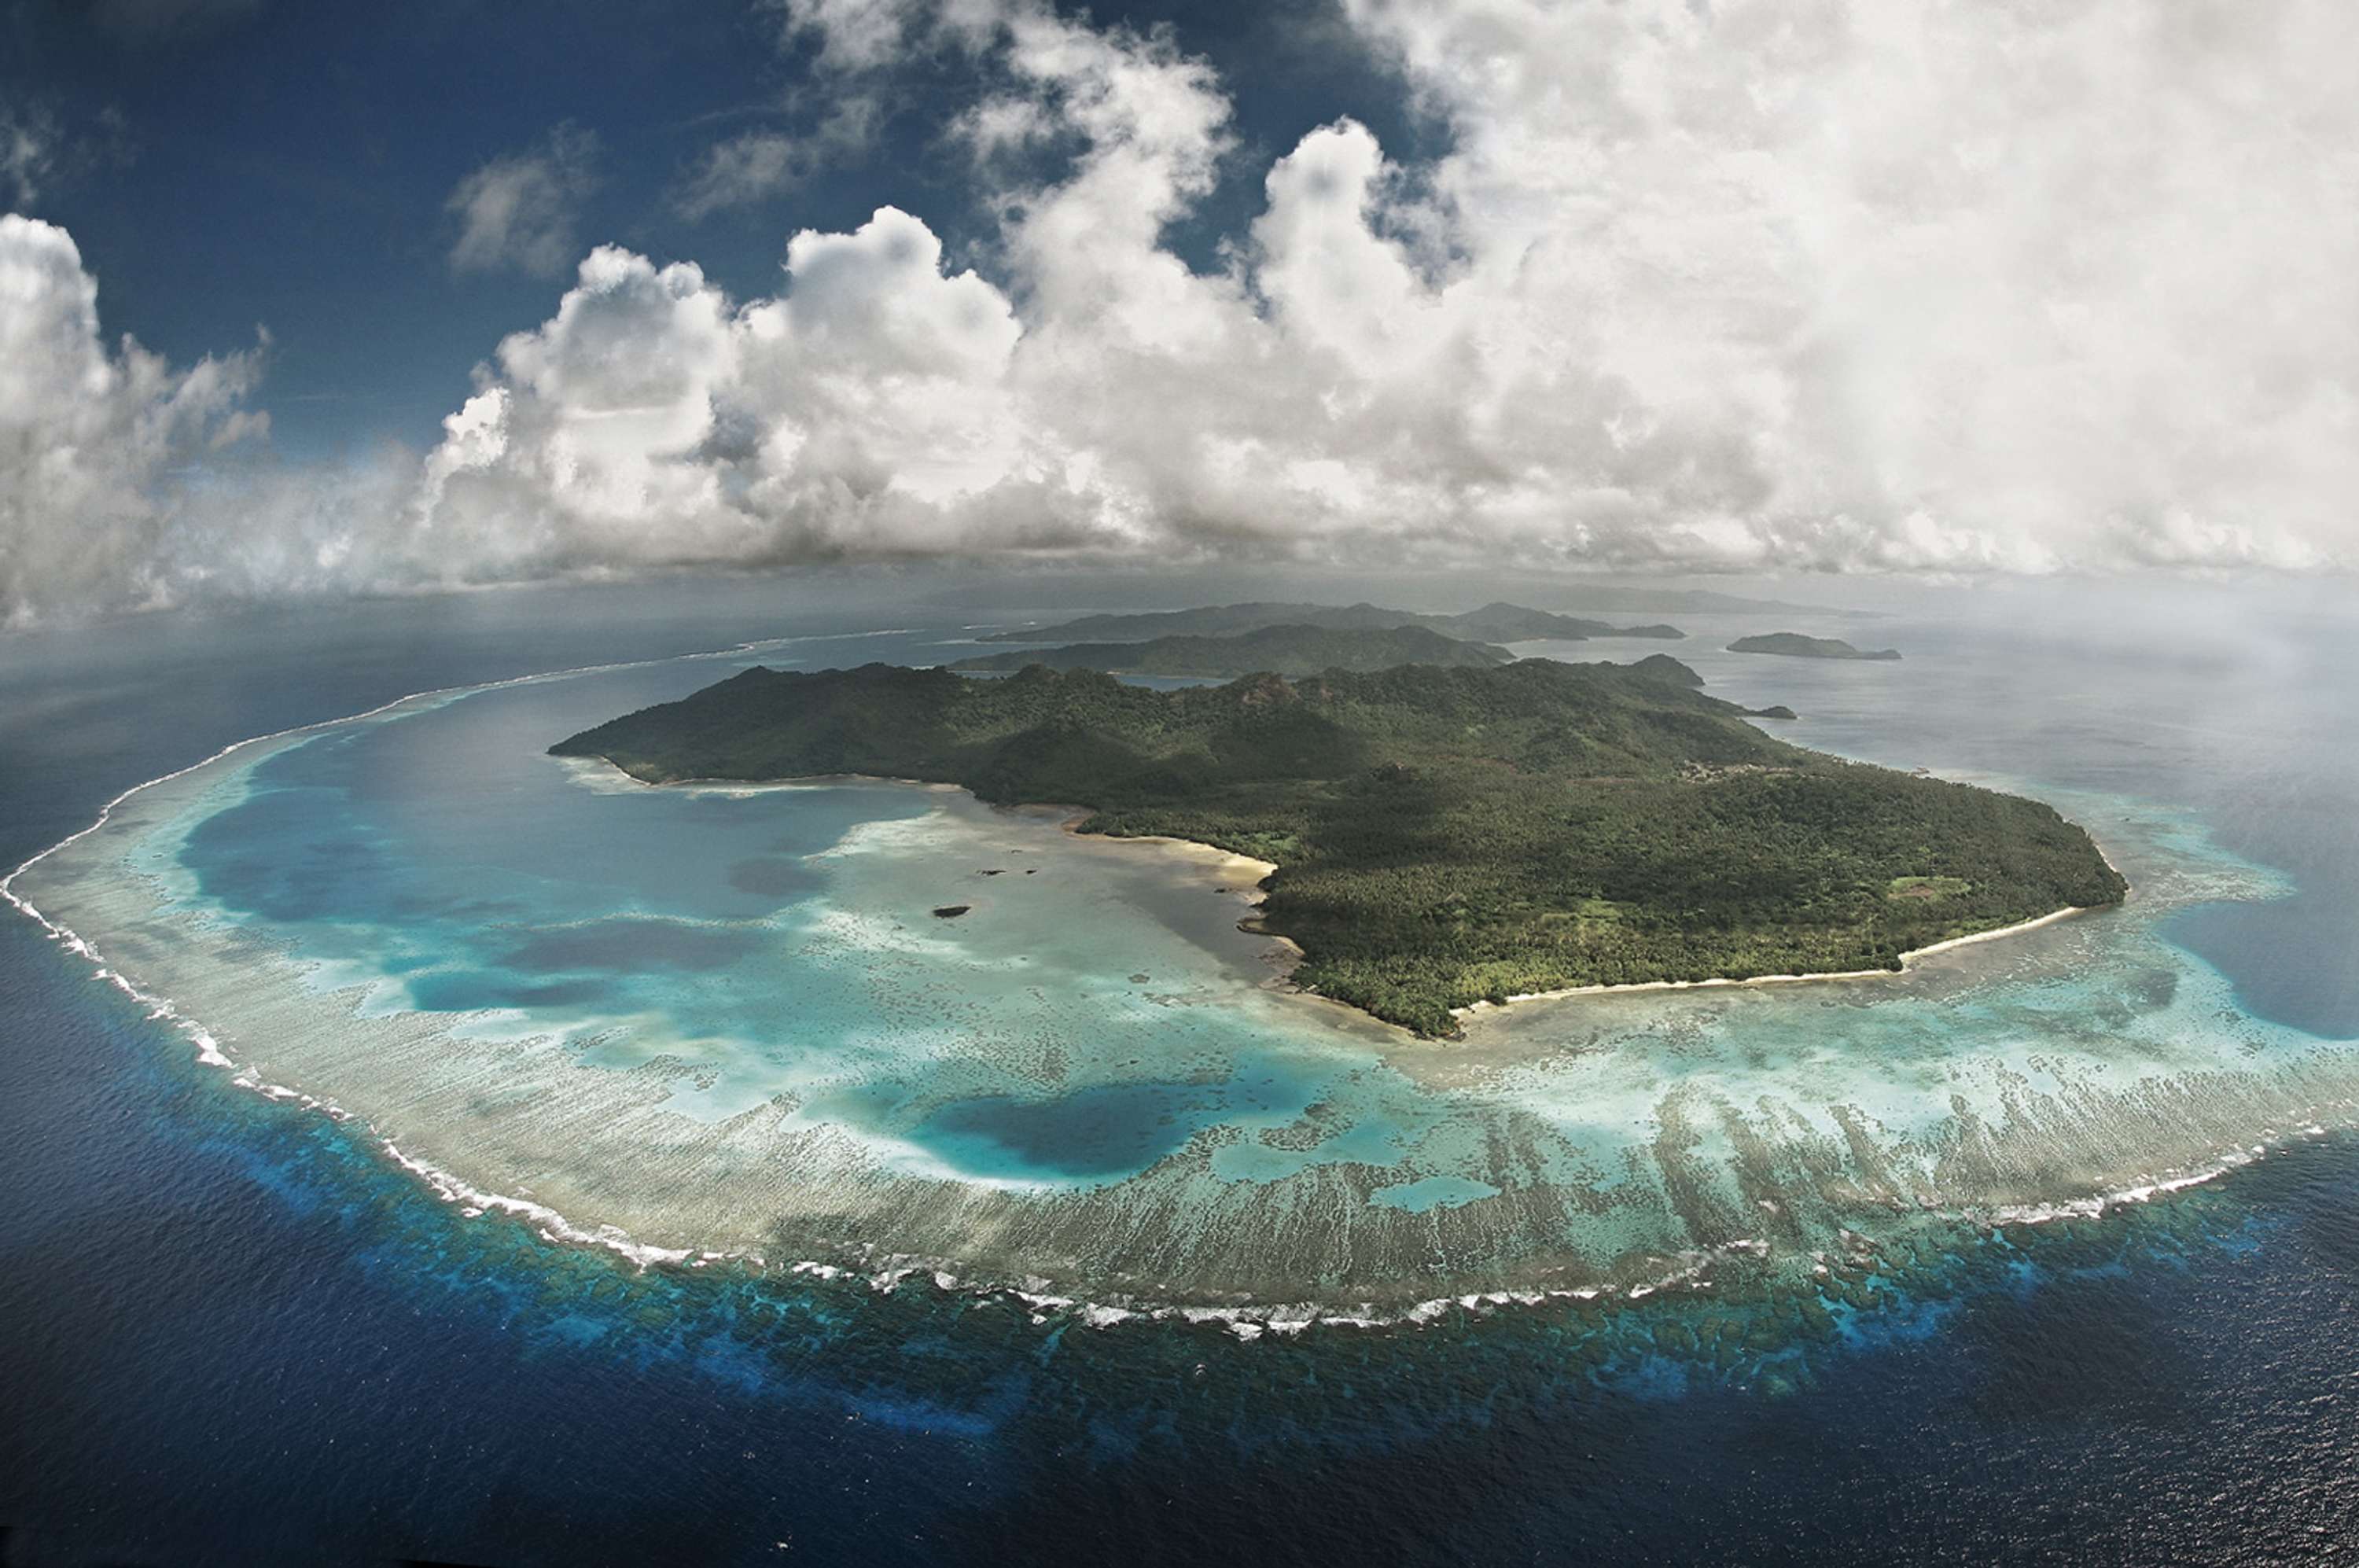 Млн тихого океана. Остров Лаукала Фиджи. Океания Фиджи. Острова Лау, Фиджи. Остров Вануа-Леву Фиджи.